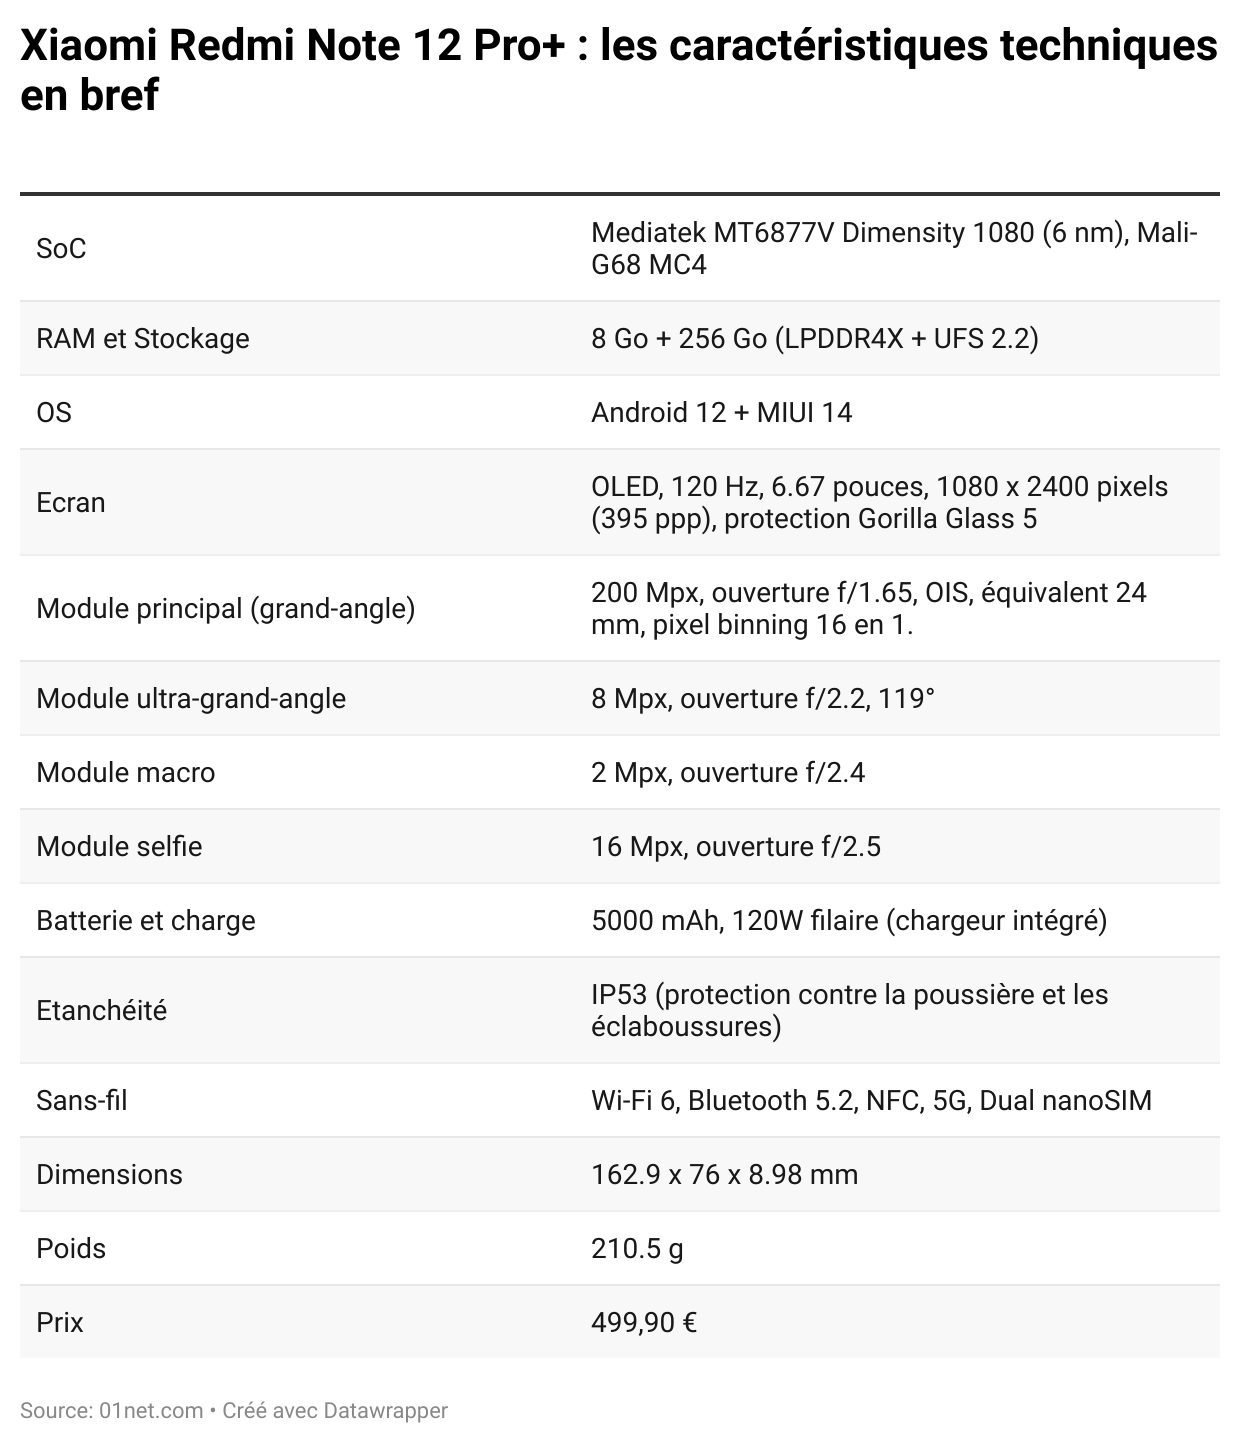 Xiaomi Redmi 12: Meilleur prix, fiche technique et vente pas cher